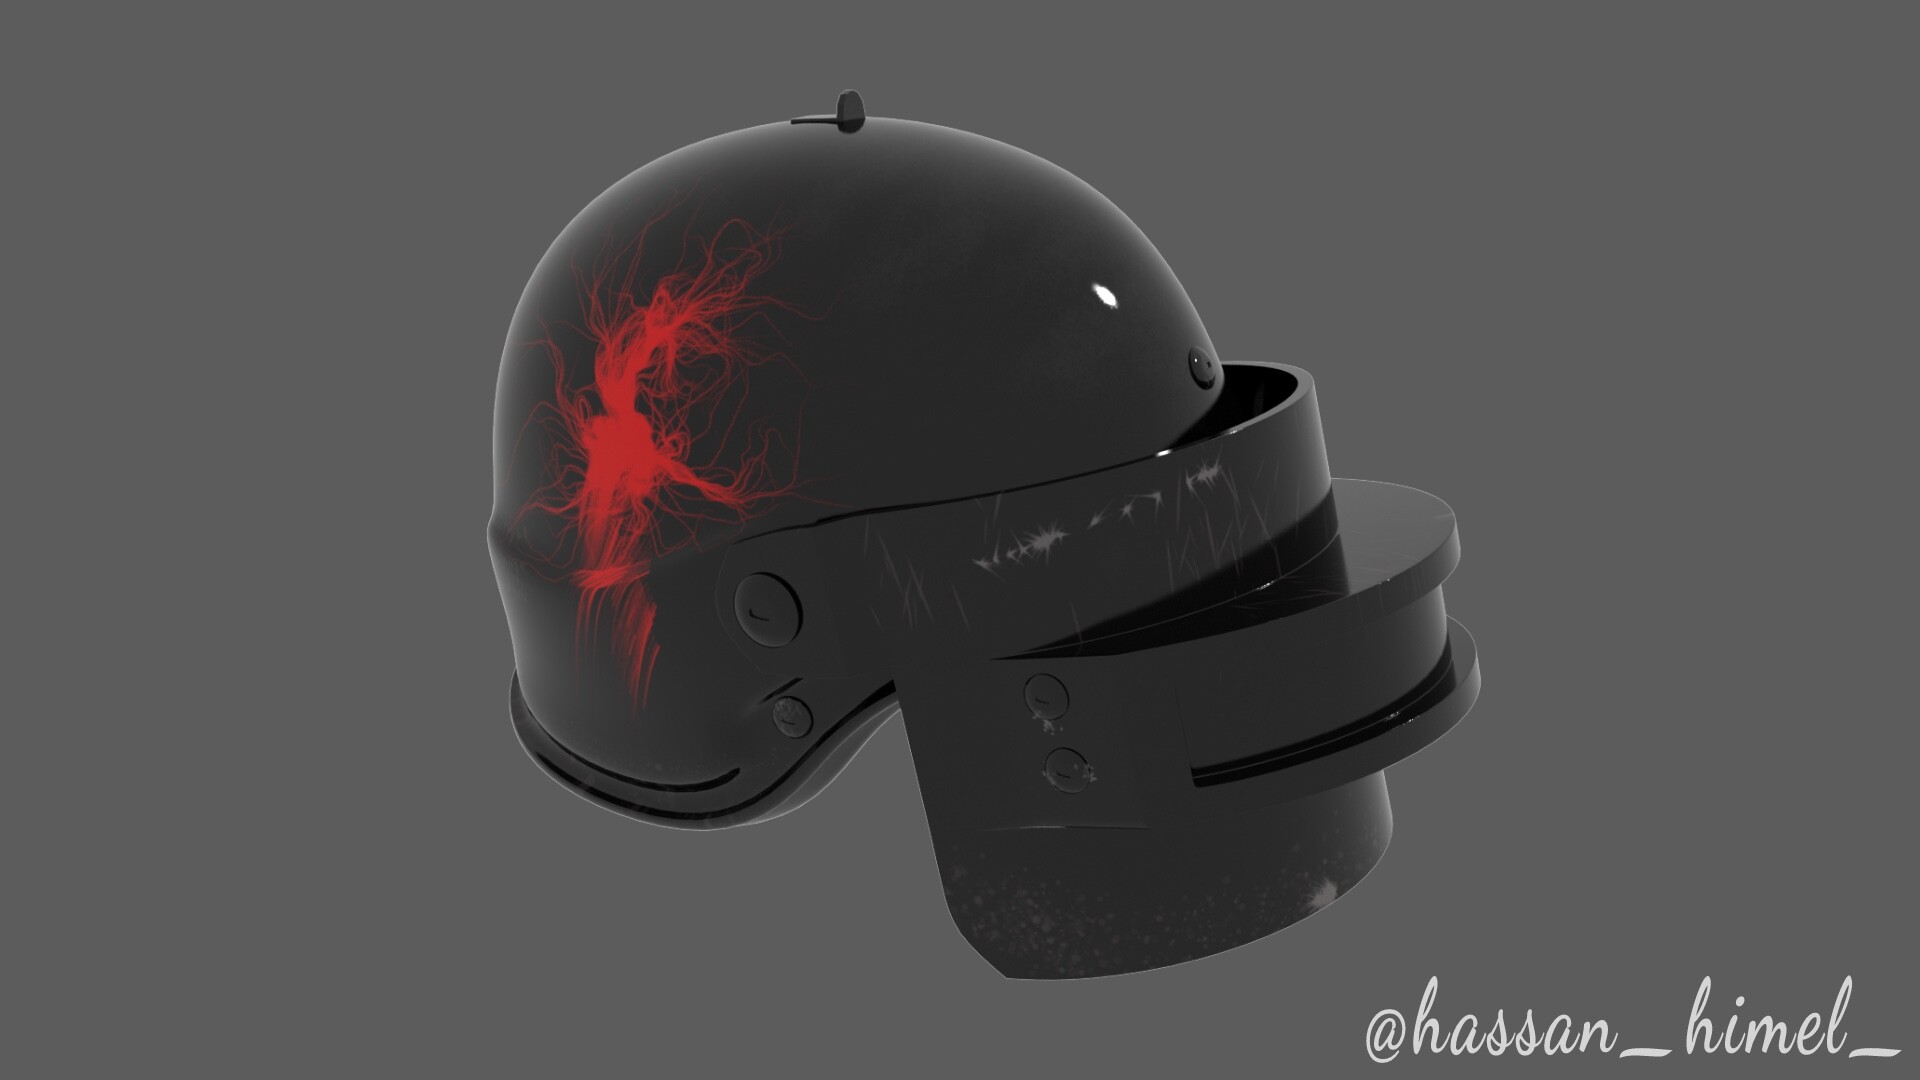 Helmet Level 3 in PUBG by Designbyfatur on Dribbble